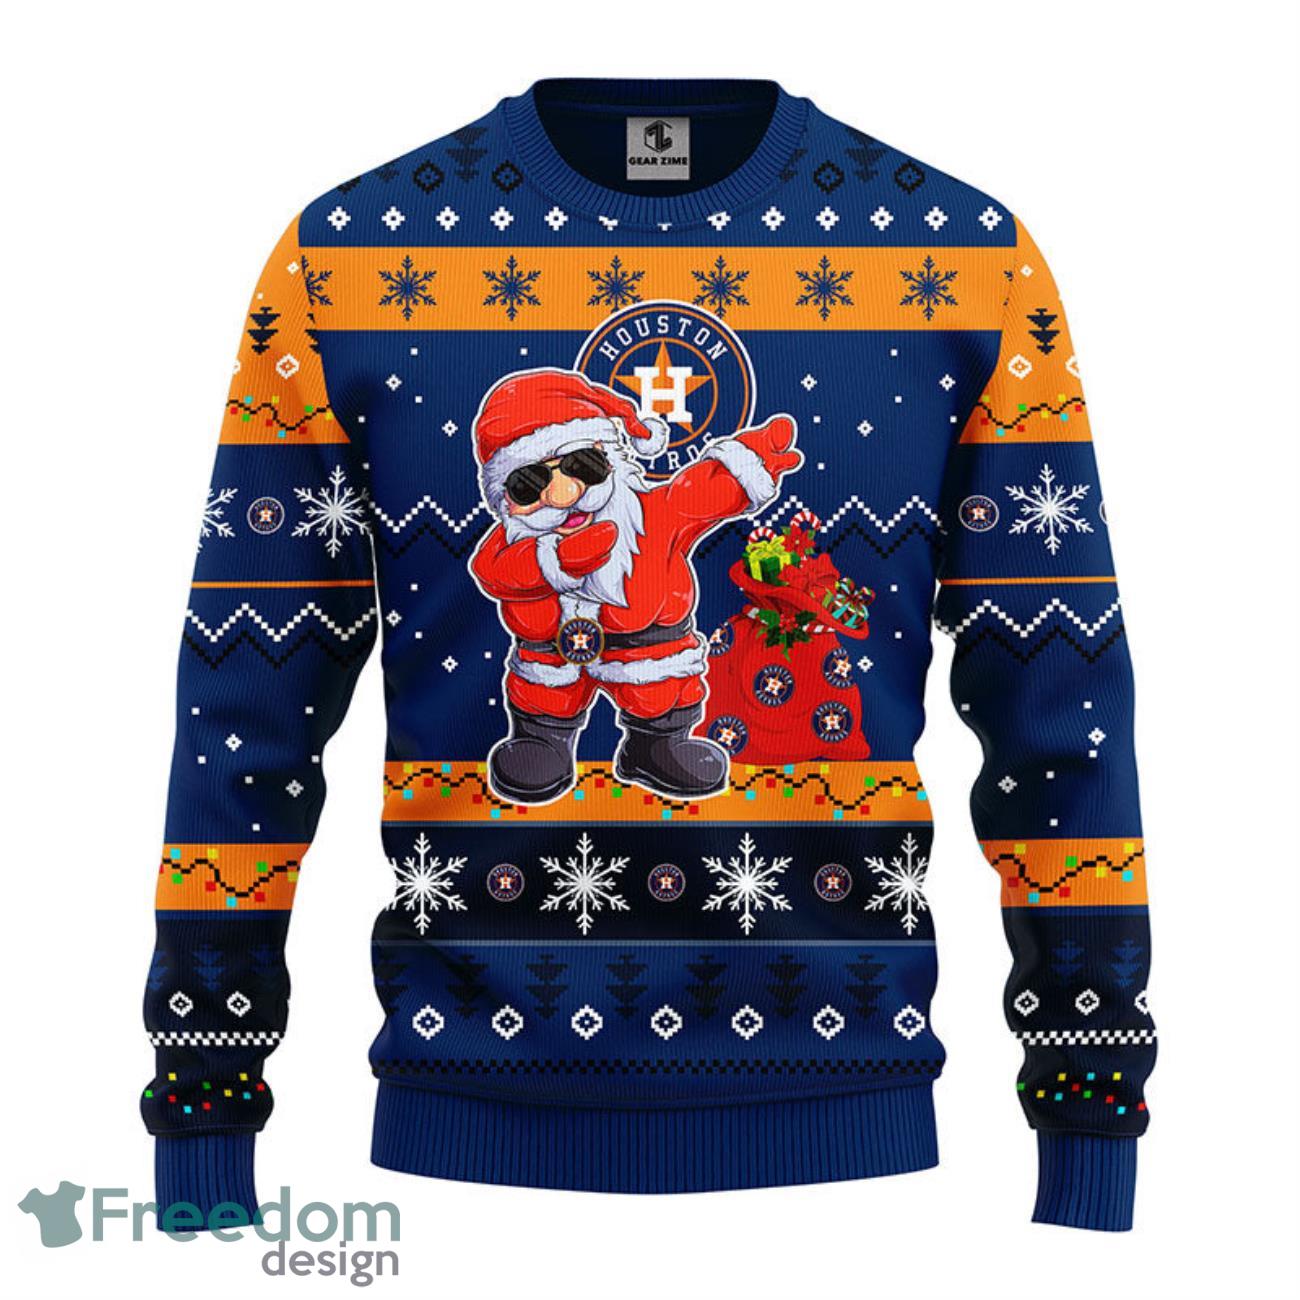 Santa Star Wars Houston Astros Merry Christmas Sweatshirt, hoodie, sweater,  long sleeve and tank top